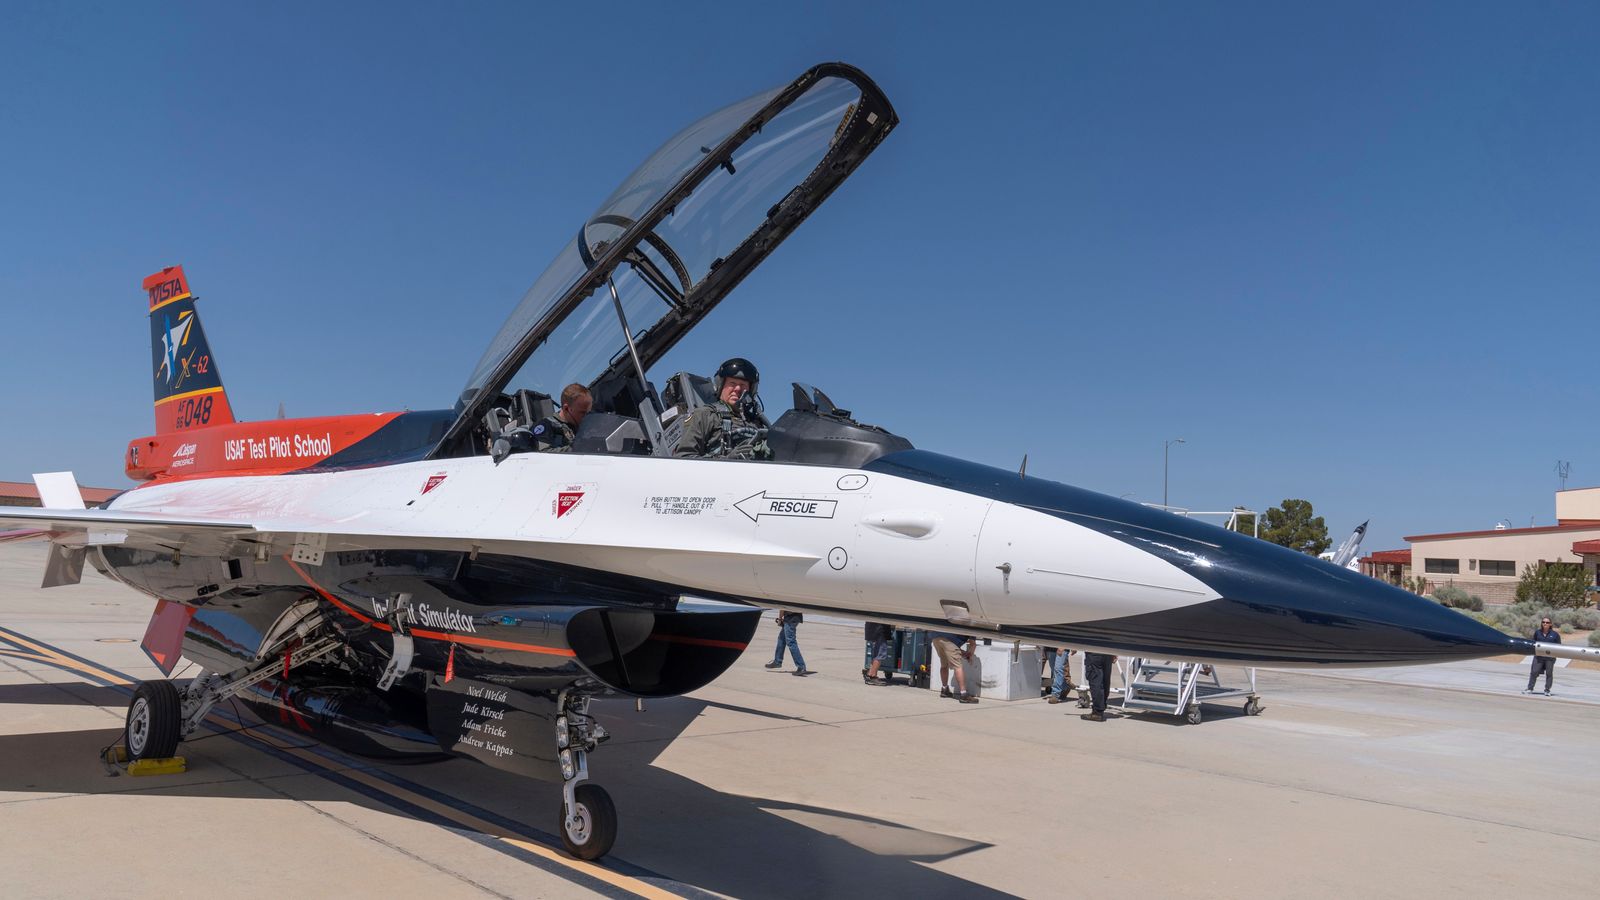 Le F-16 contrôlé par l’IA emmène le leader de l’US Air Force pour un voyage à grande vitesse – alors qu’il soutient la technologie pour lancer des armes |  Actualités américaines